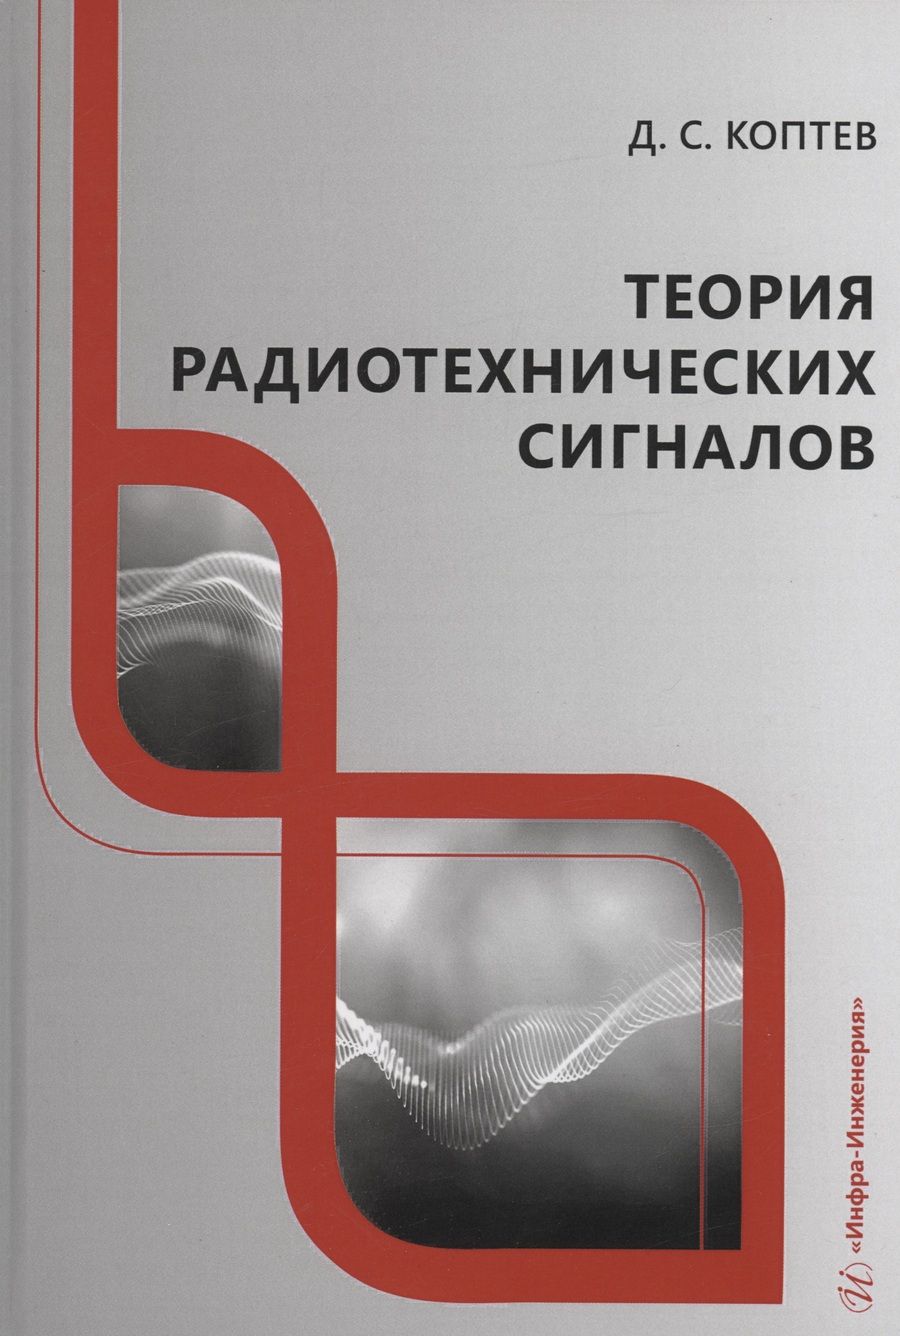 Обложка книги "Коптев: Теория радиотехнических сигналов. Учебное пособие"